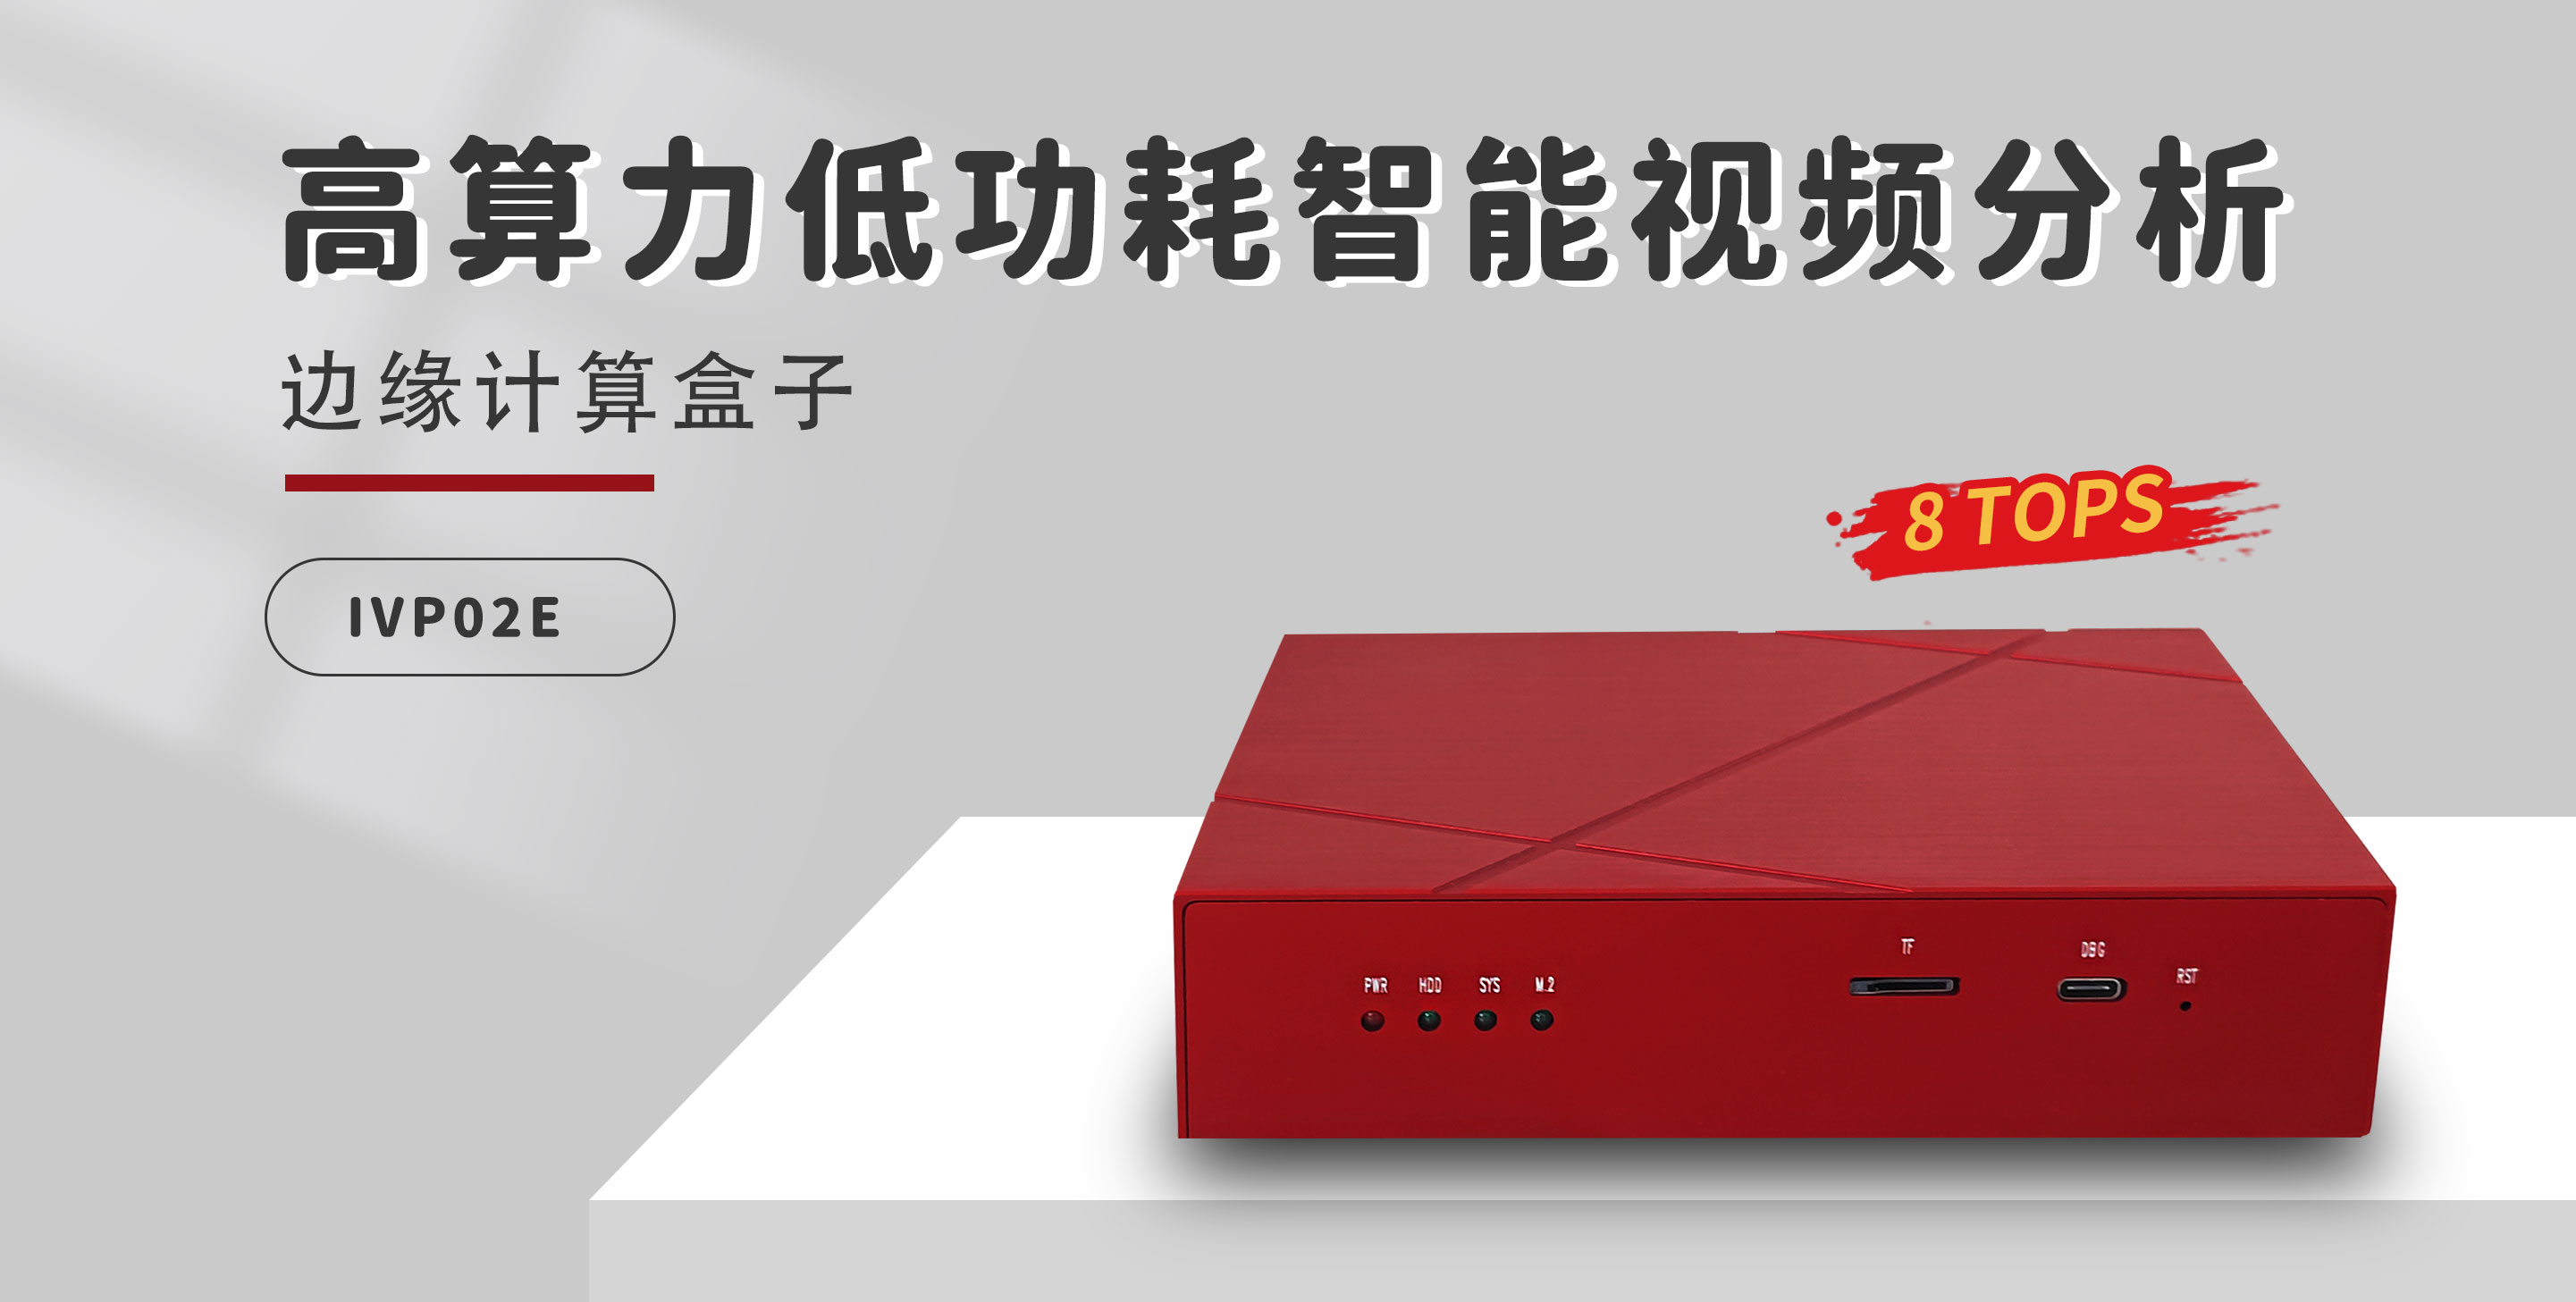 英码科技“小红盒”，低成本替代Hi3559A平台智能边缘方案